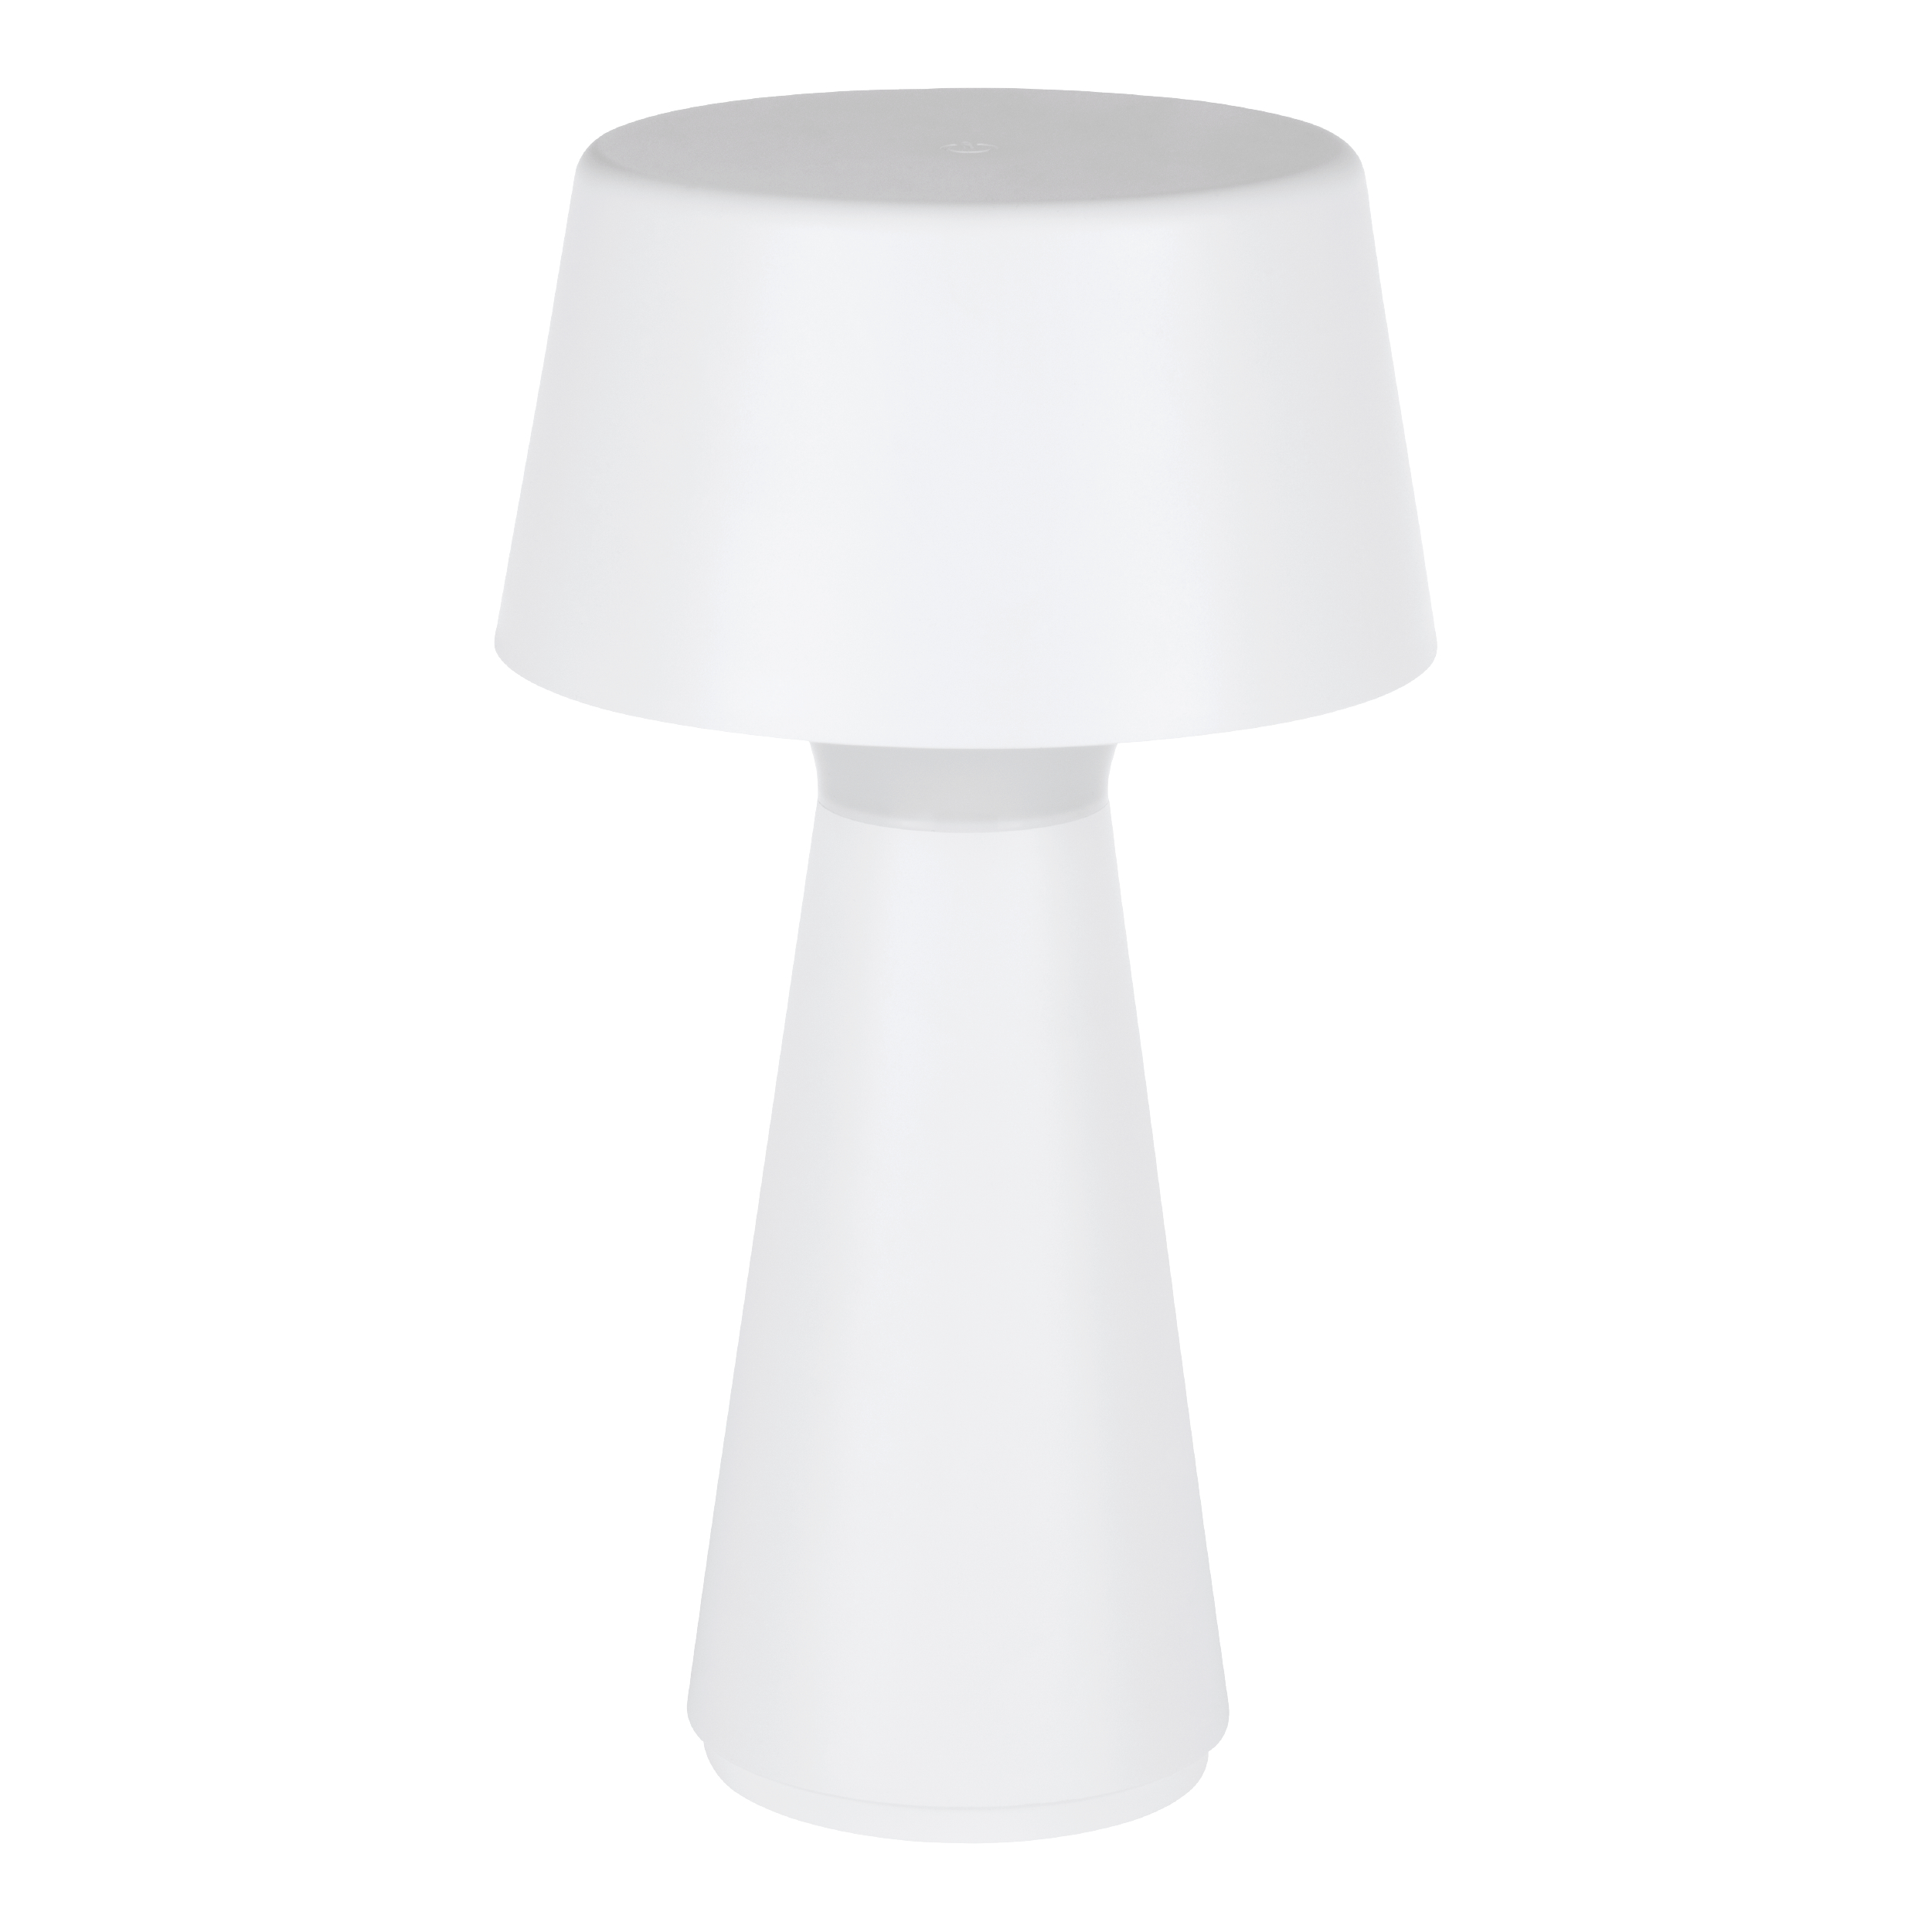 EGLO Lampe de table Huesa 75795 blanc, batterie